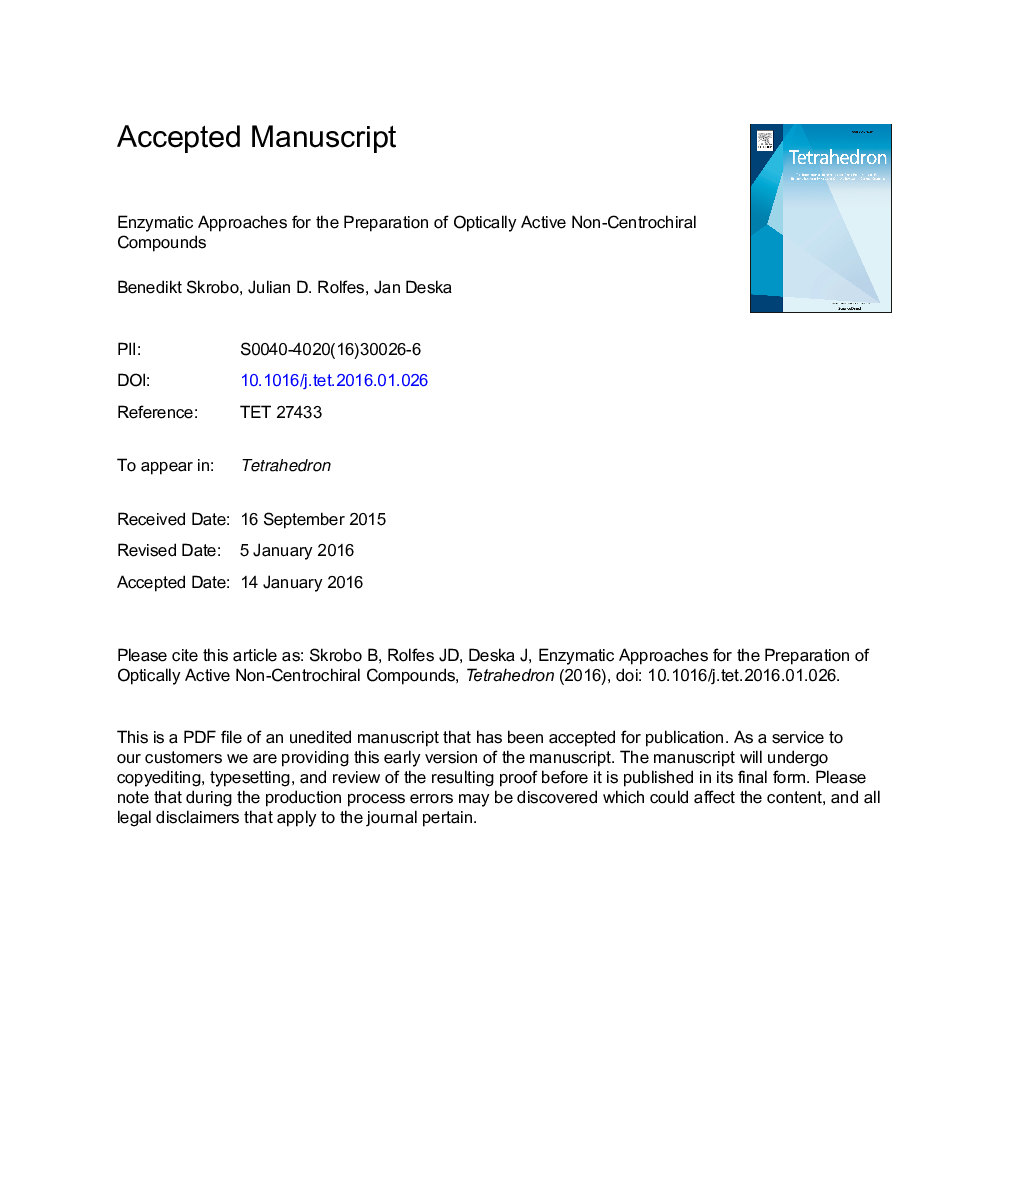 روشهای آنزیمی برای تهیه ترکیبات غیر مرکزی فعال اپتیکی 